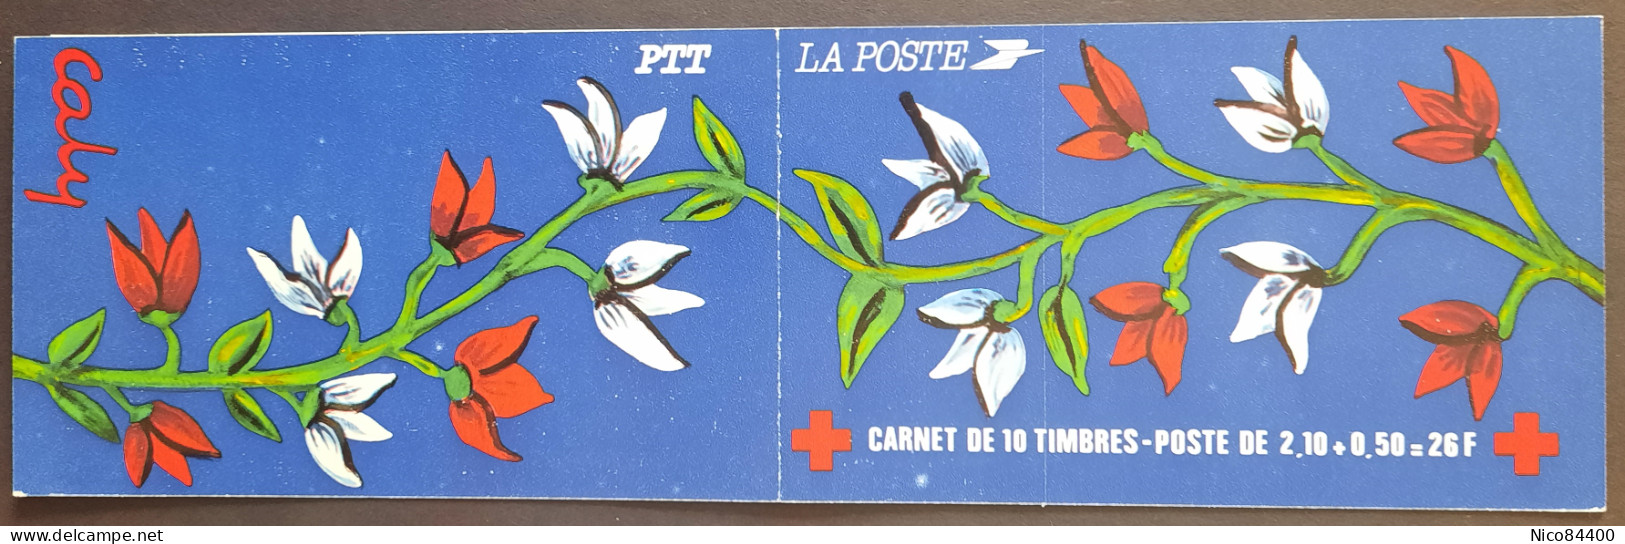 France - Carnet Croix-Rouge - 1984 - Y&T 2033 - Œuvre De Caly - Neuf ** - Croce Rossa